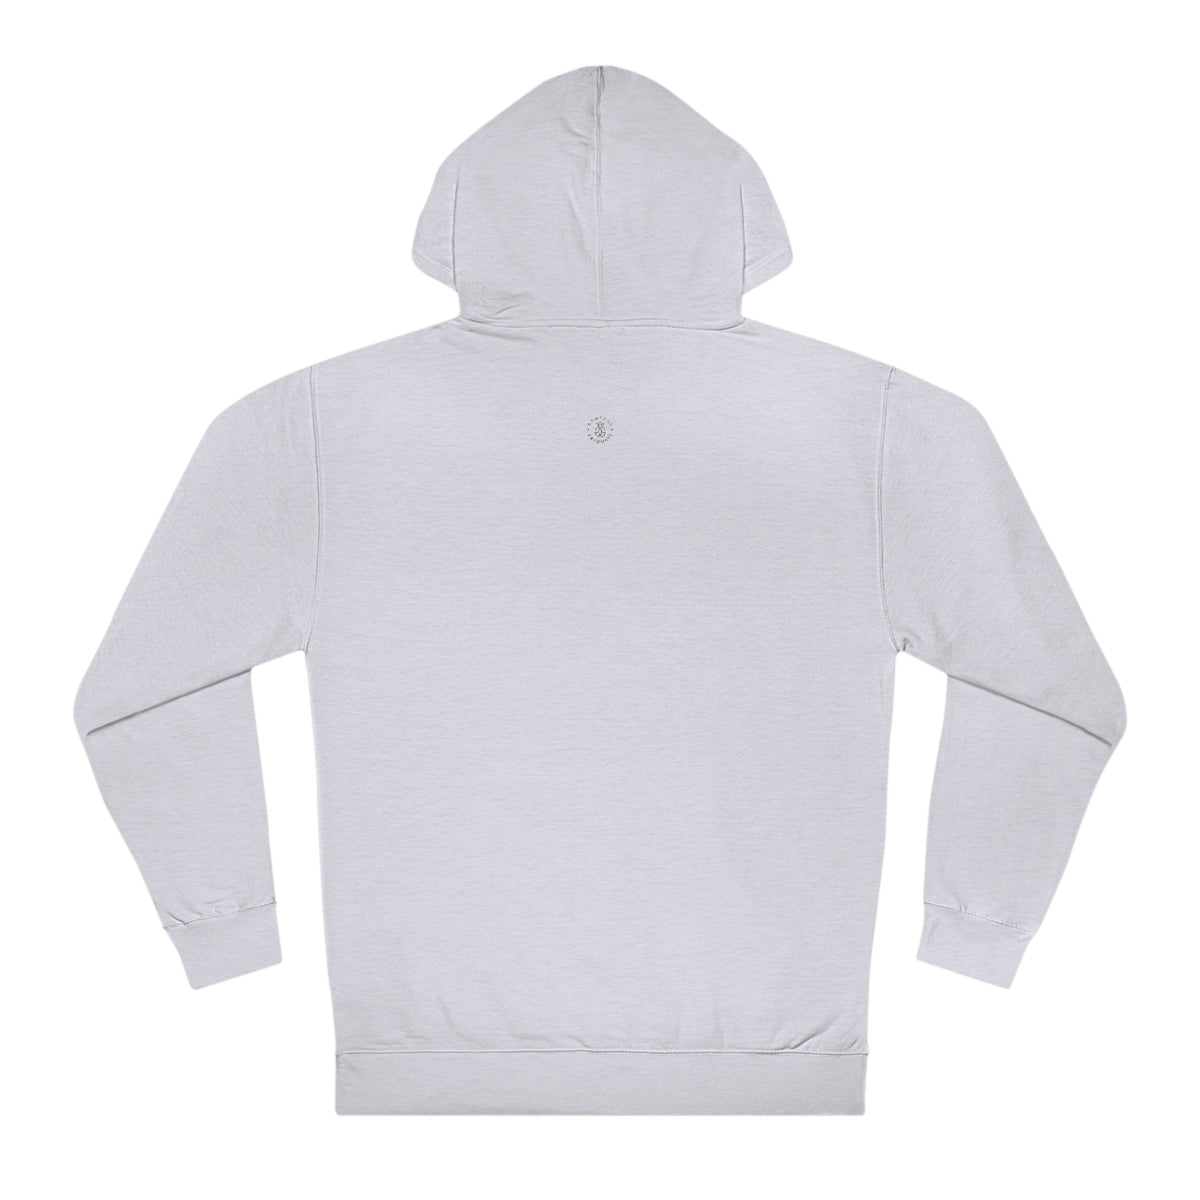 USC Hooded Sweatshirt - GG - ITC